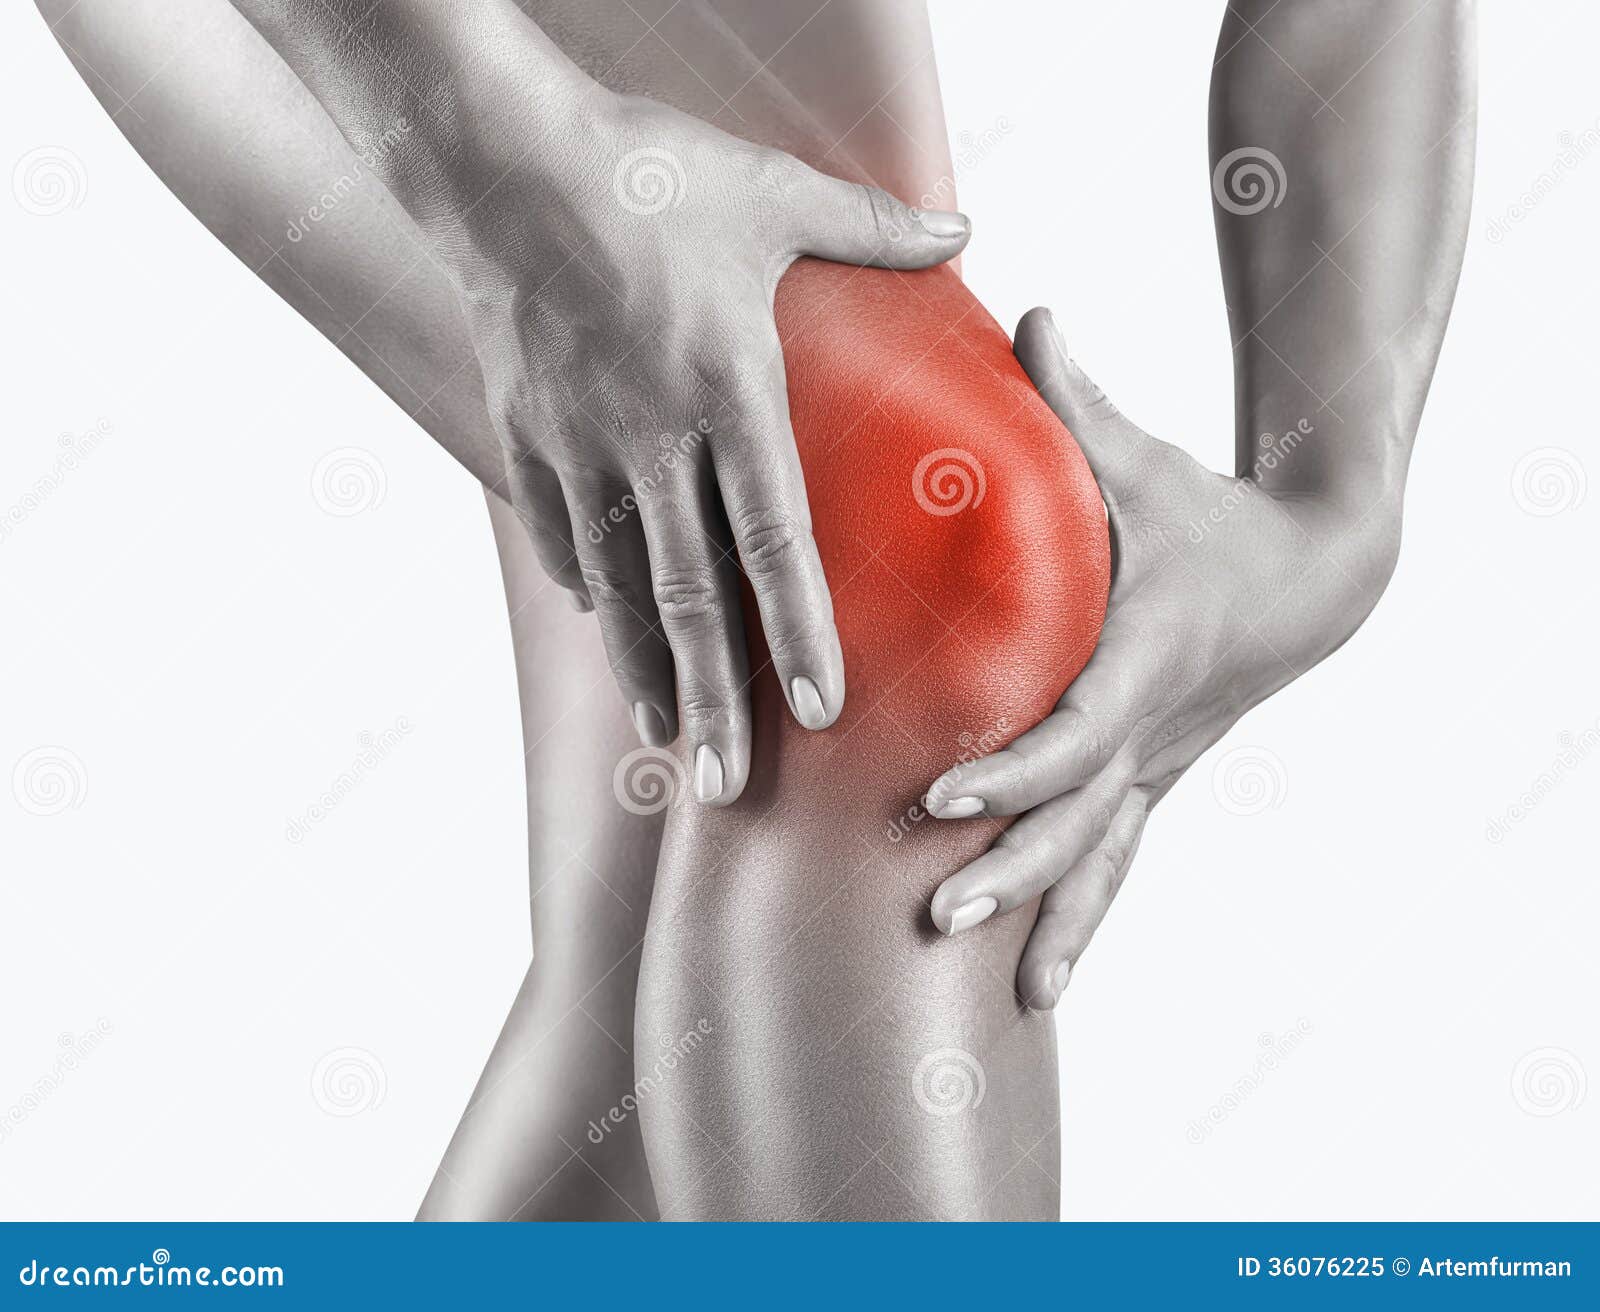 acute pain in knee